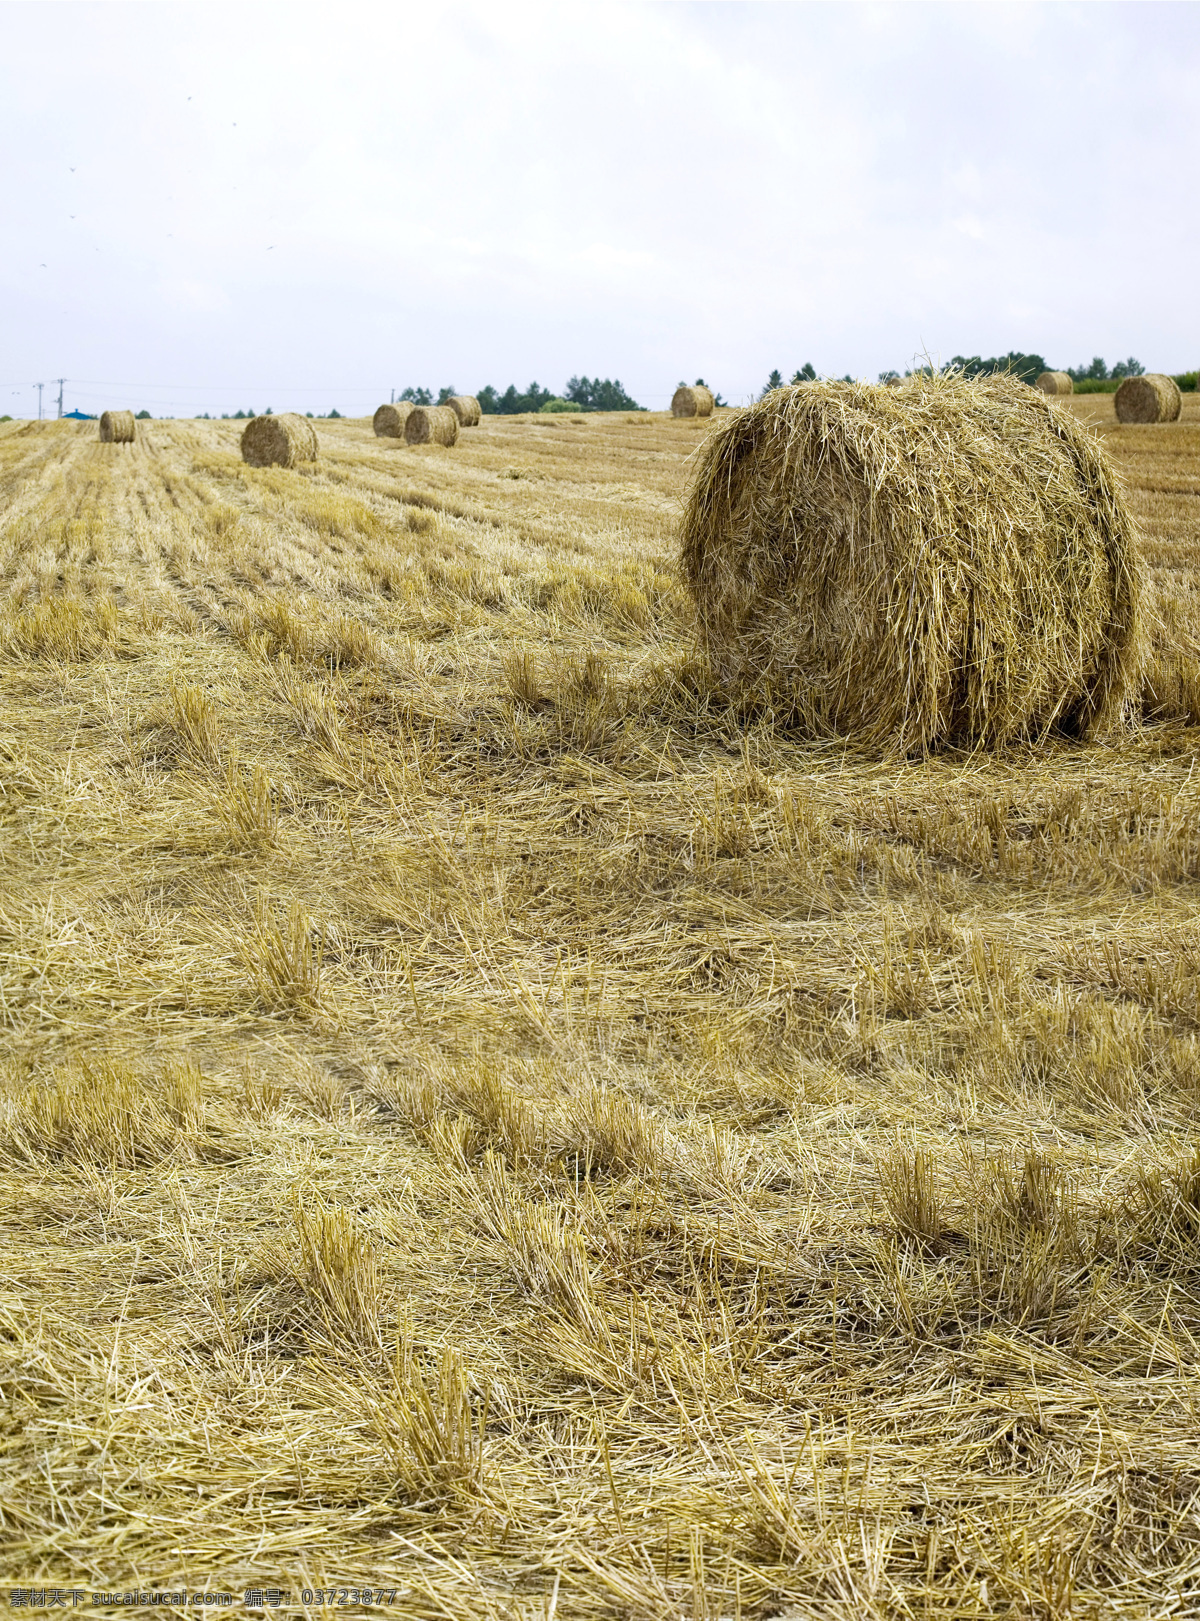 麦田 收割 丰收 麦秆 麦秸 田野 麦垛 麦 夏天 麦秸团 麦团 壁纸 wheat straw 农田 麦场 麦地 庄稼地 生物 小麦 麦子 摄影图 自然景观 田园风光